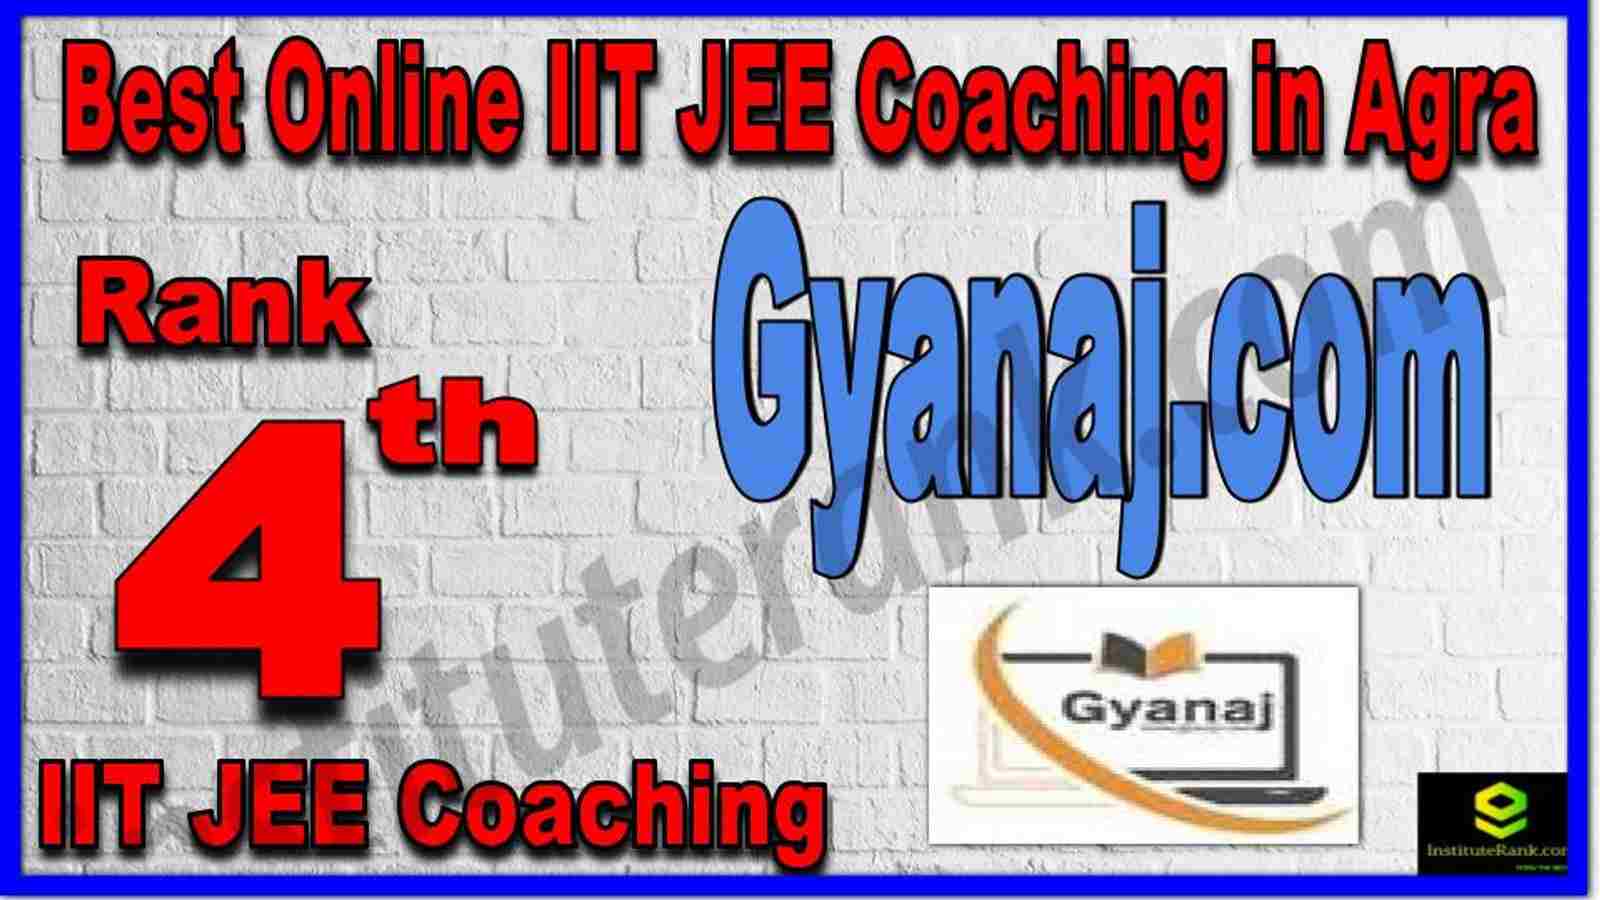 Rank 4th Best Online IIT JEE Coaching in Agra